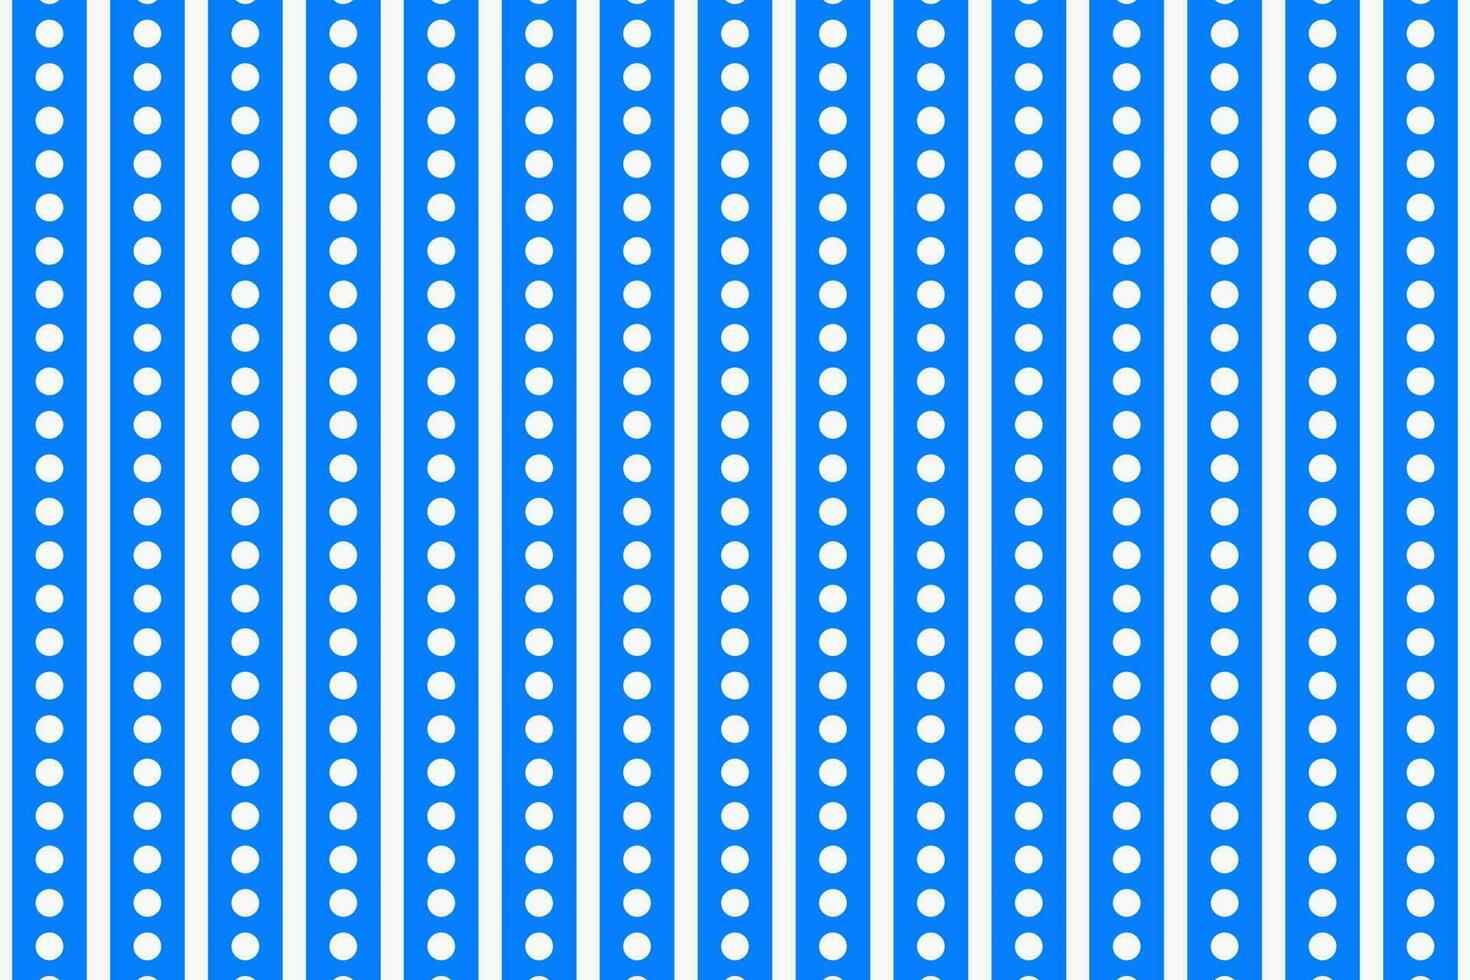 azul e branco vertical listra ponto círculo grade. desatado padronizar vetor fundo.